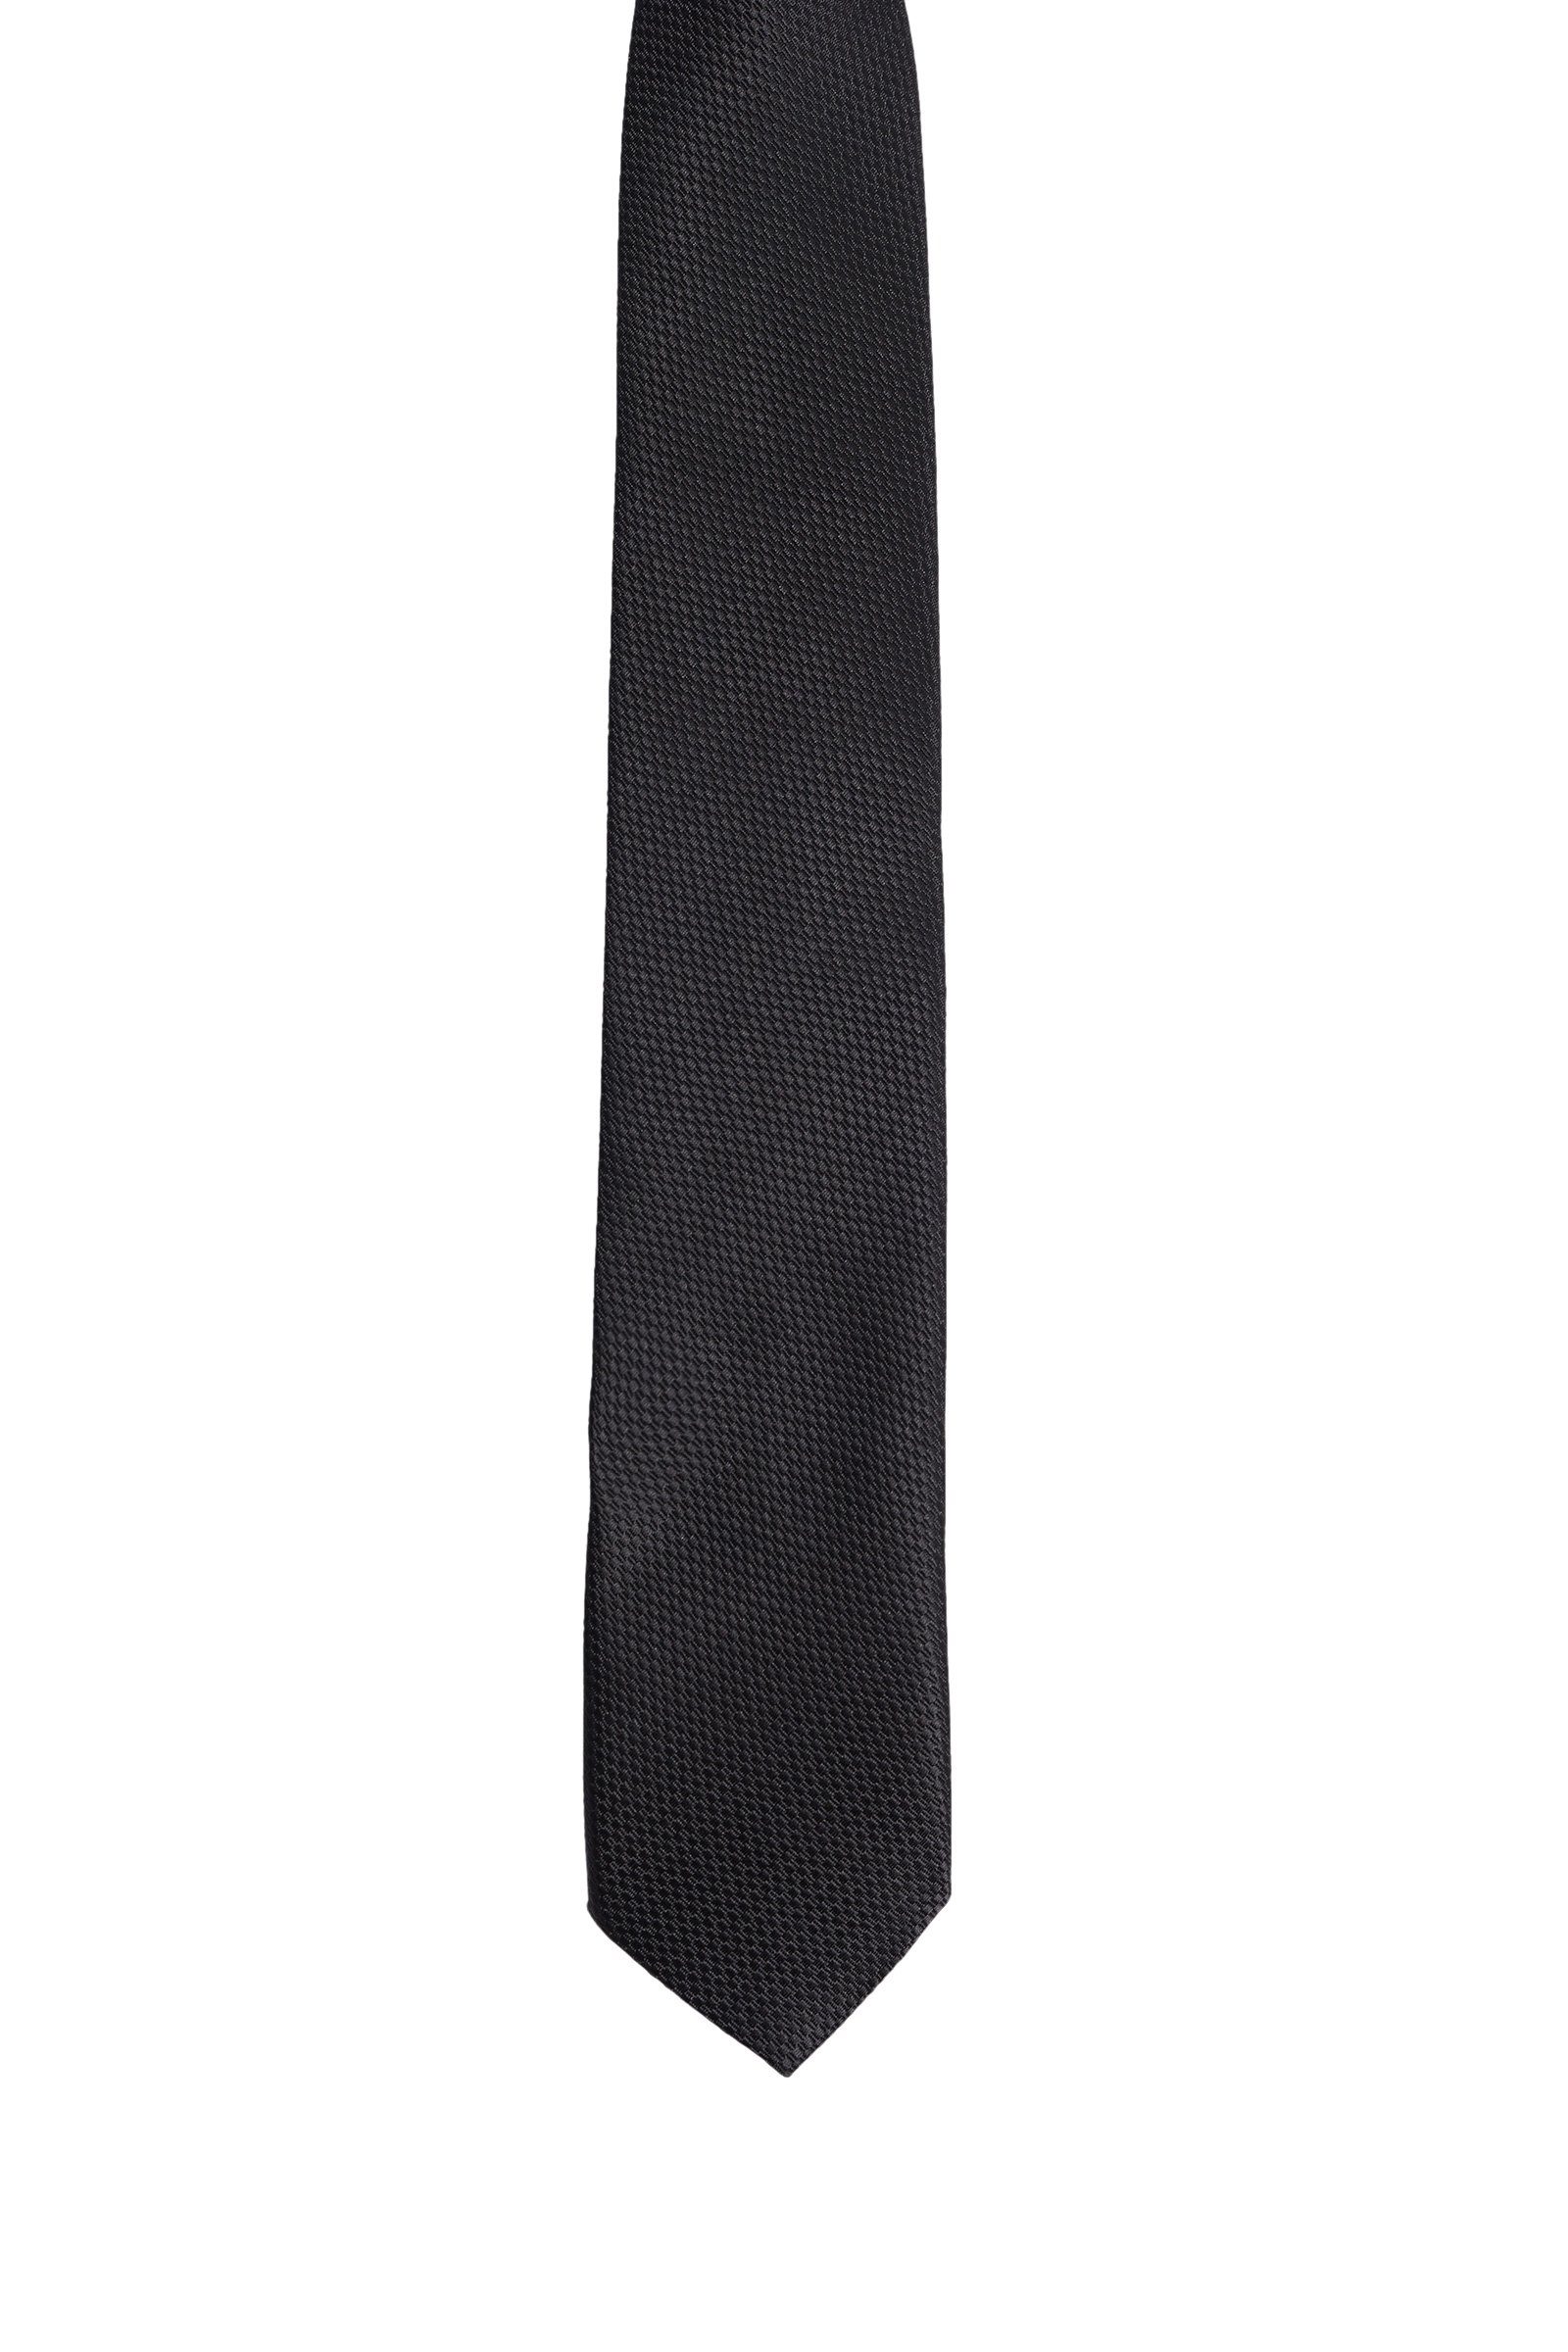 Krawatte Fashion WE Schwarz